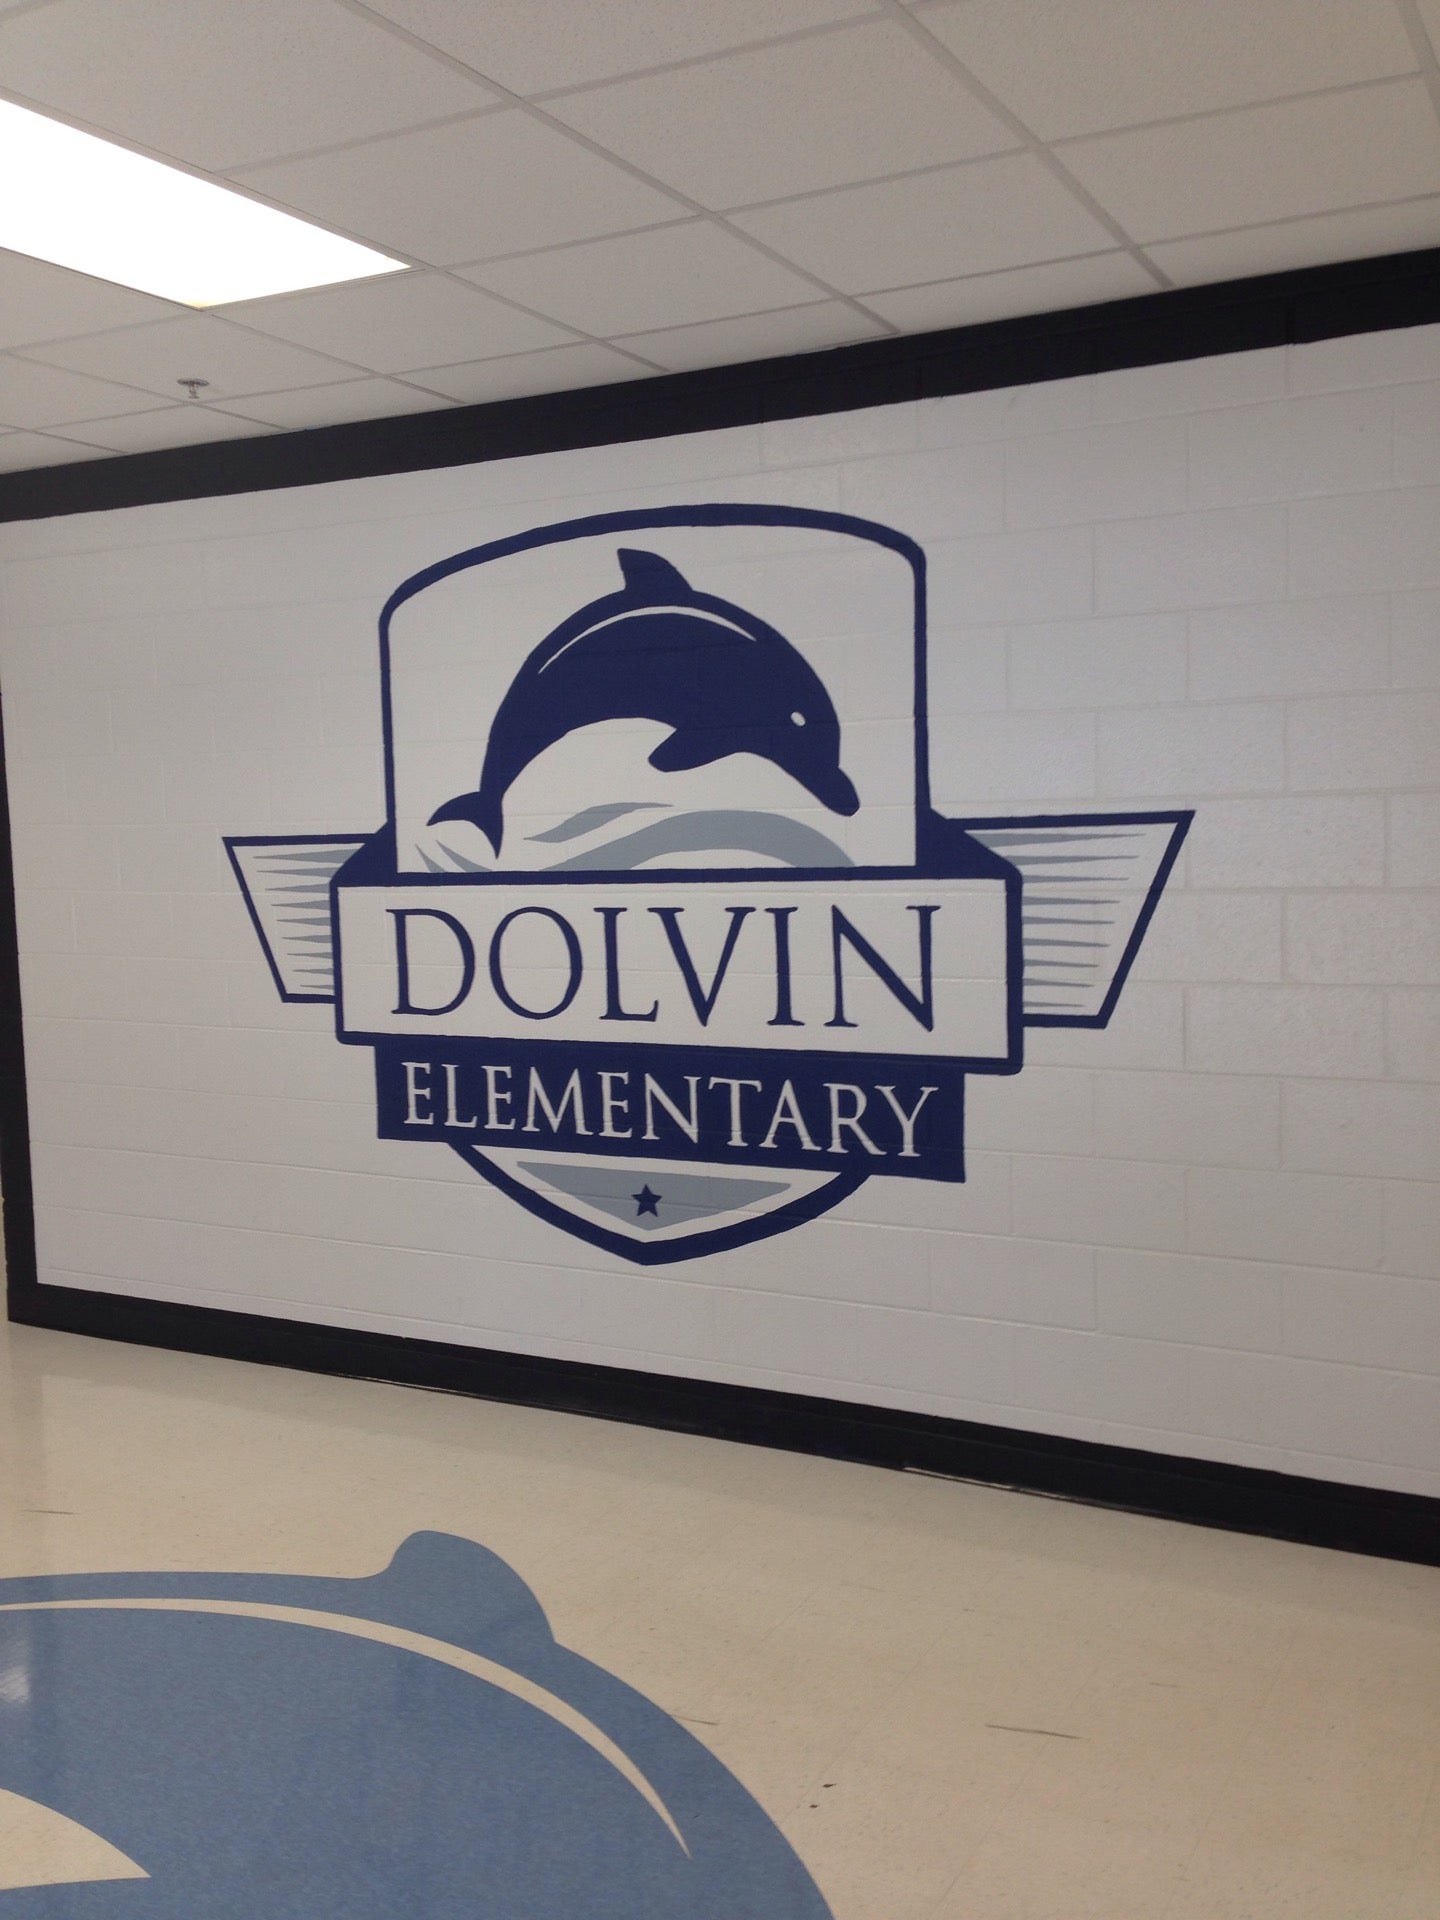 Dolvin Elementary School Alpharetta, GA 30022